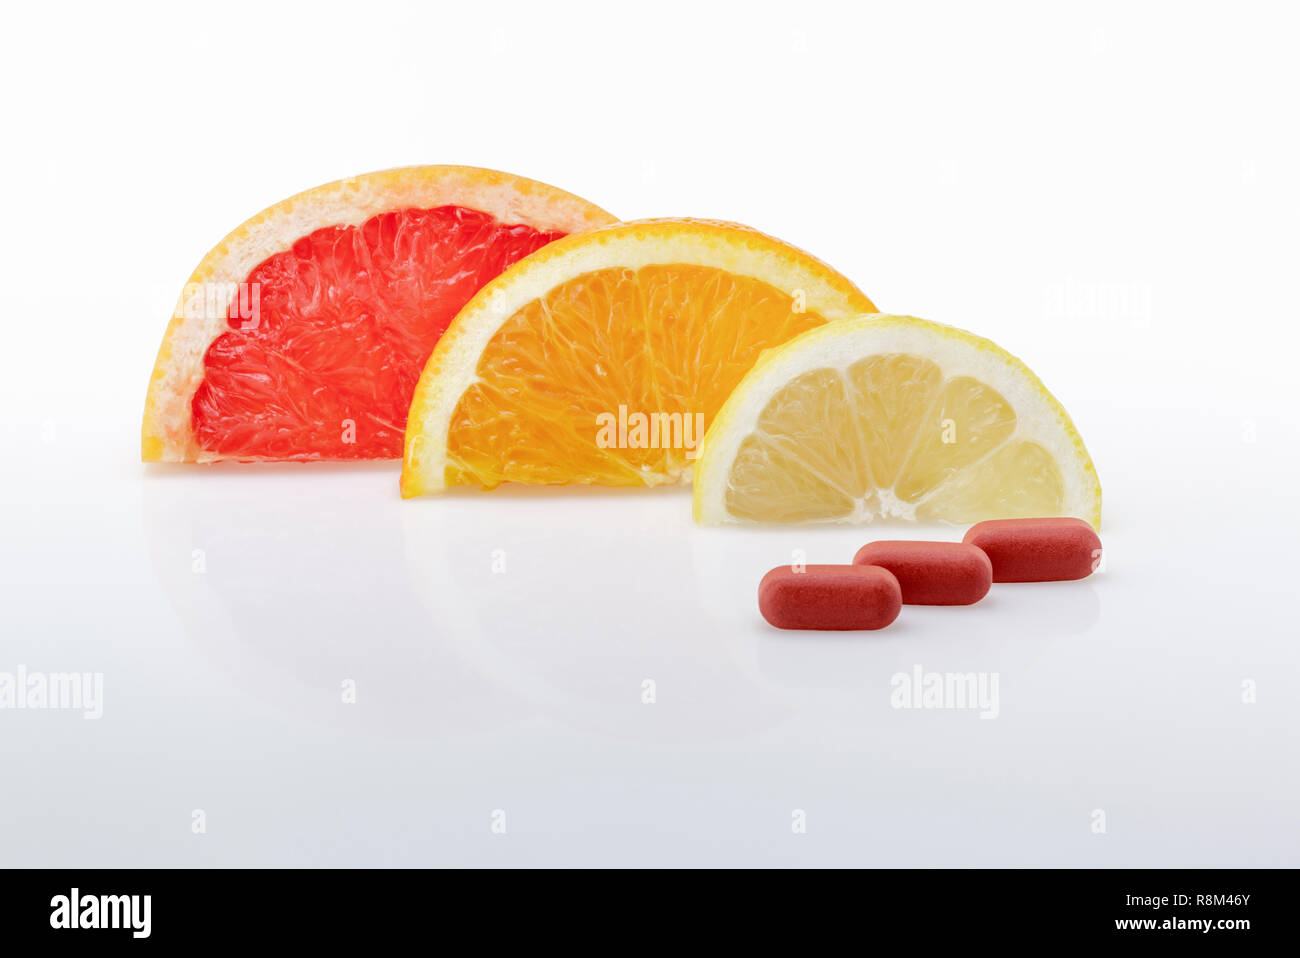 Grapefruit-, Orangen- und Zitronenscheiben mit drei Vitamin Tabletten.  Natürliche Vitamine versus synthetische Tabletten Stockfotografie - Alamy